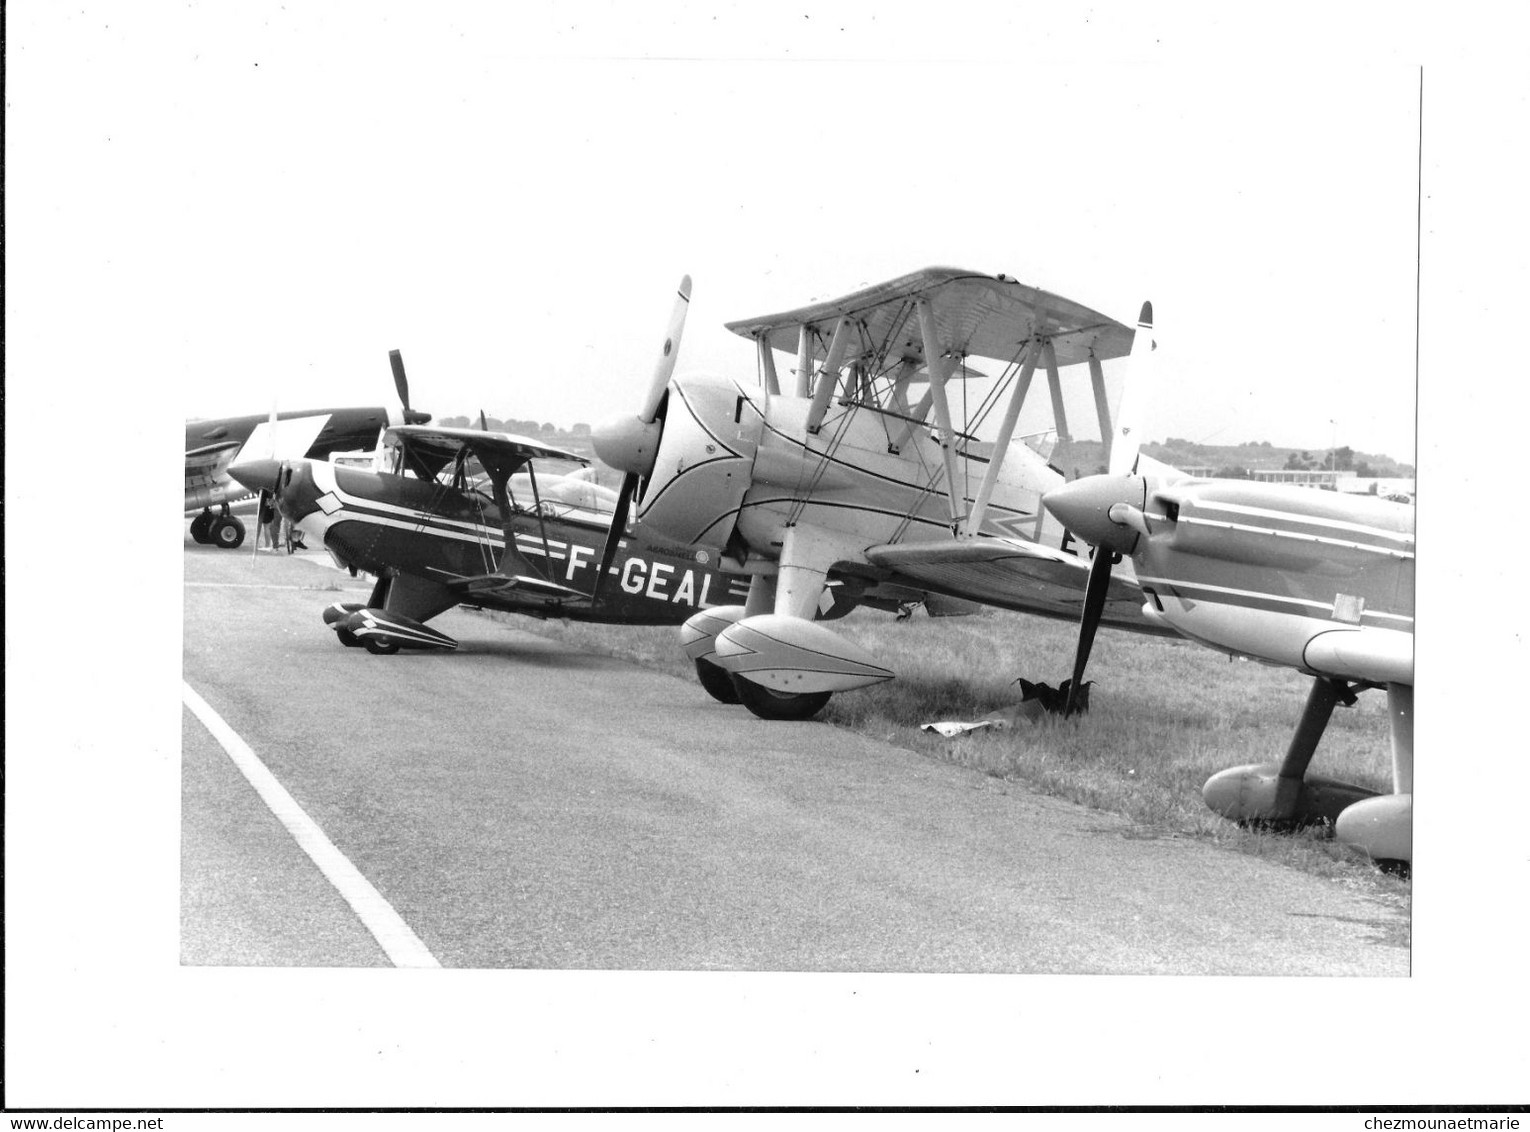 PERPIGNAN - AVIONS DONT F-GEAL PITTS S-2B DE CHRISTEN INDUSTRIES - MEETING AERIEN - PHOTO 24*18 CM DAVIAU 1994 - Luftfahrt